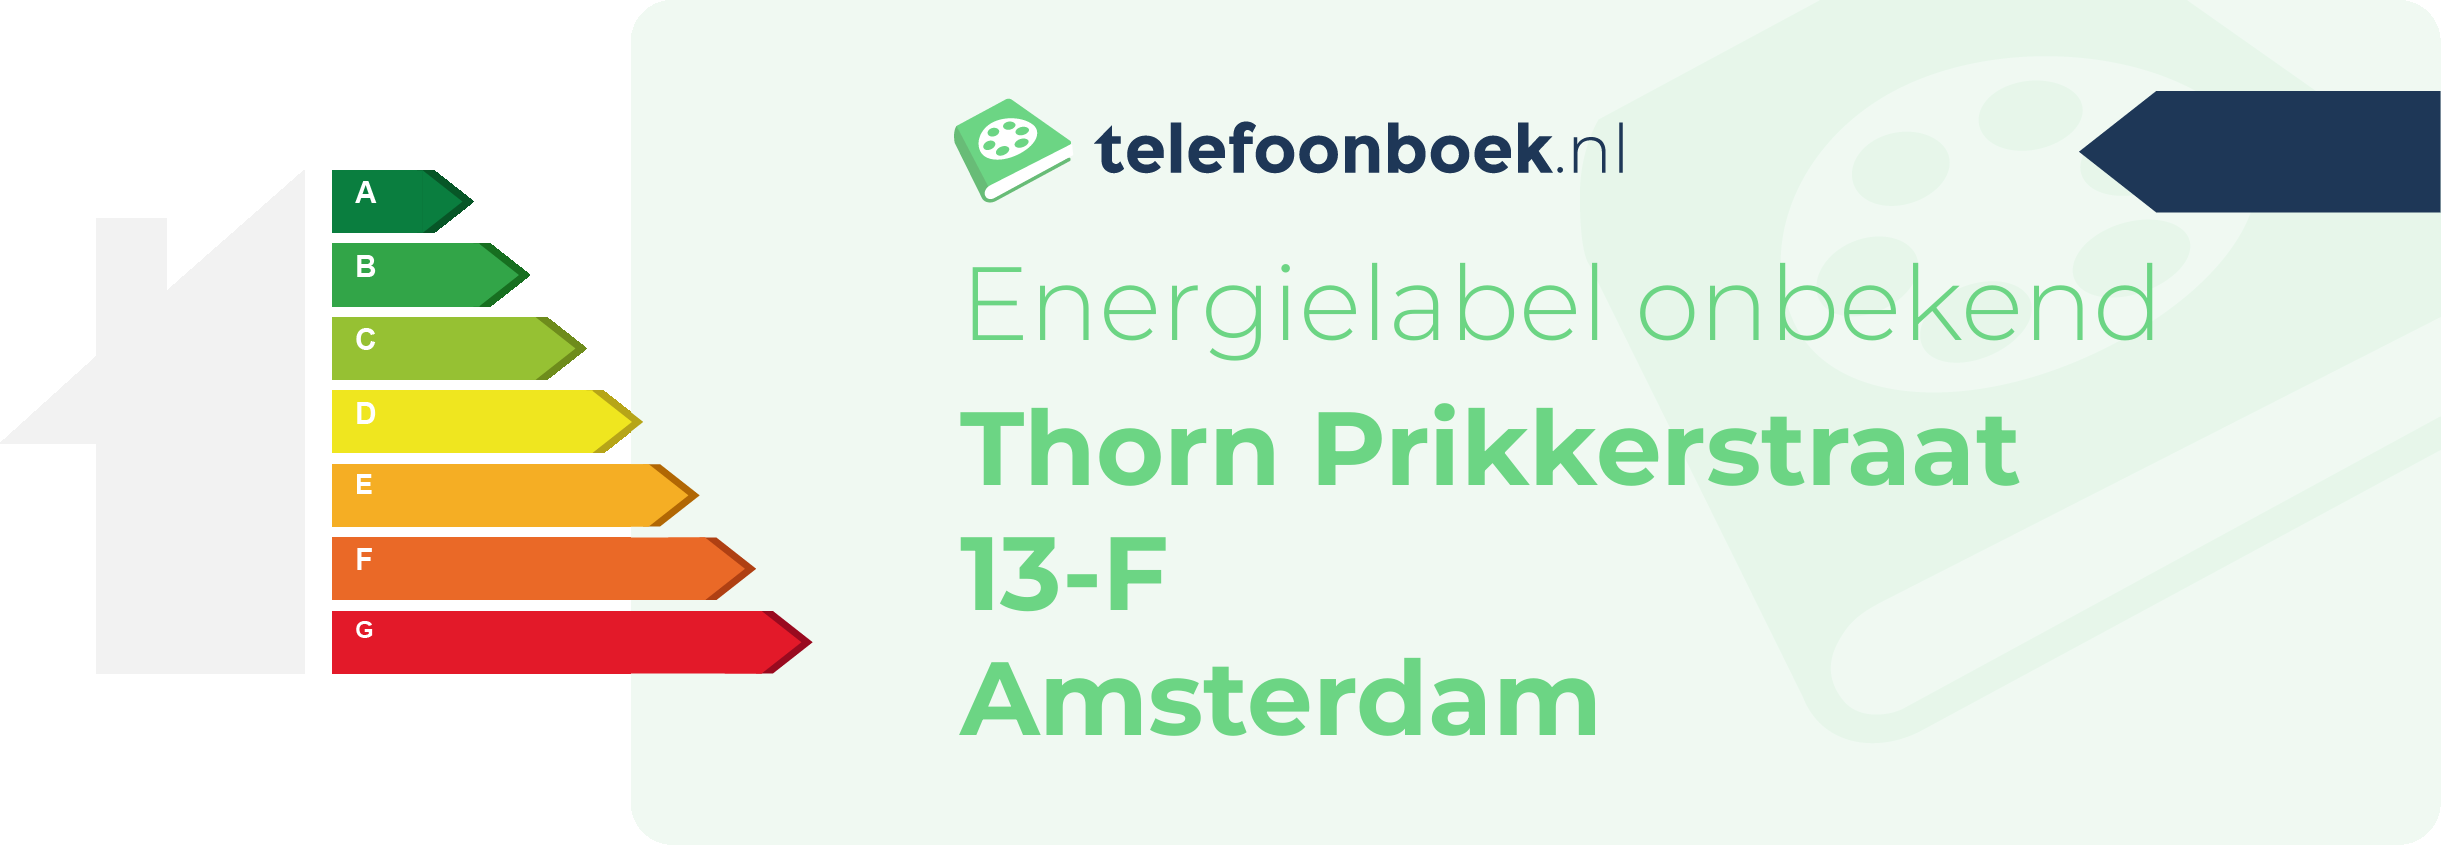 Energielabel Thorn Prikkerstraat 13-F Amsterdam